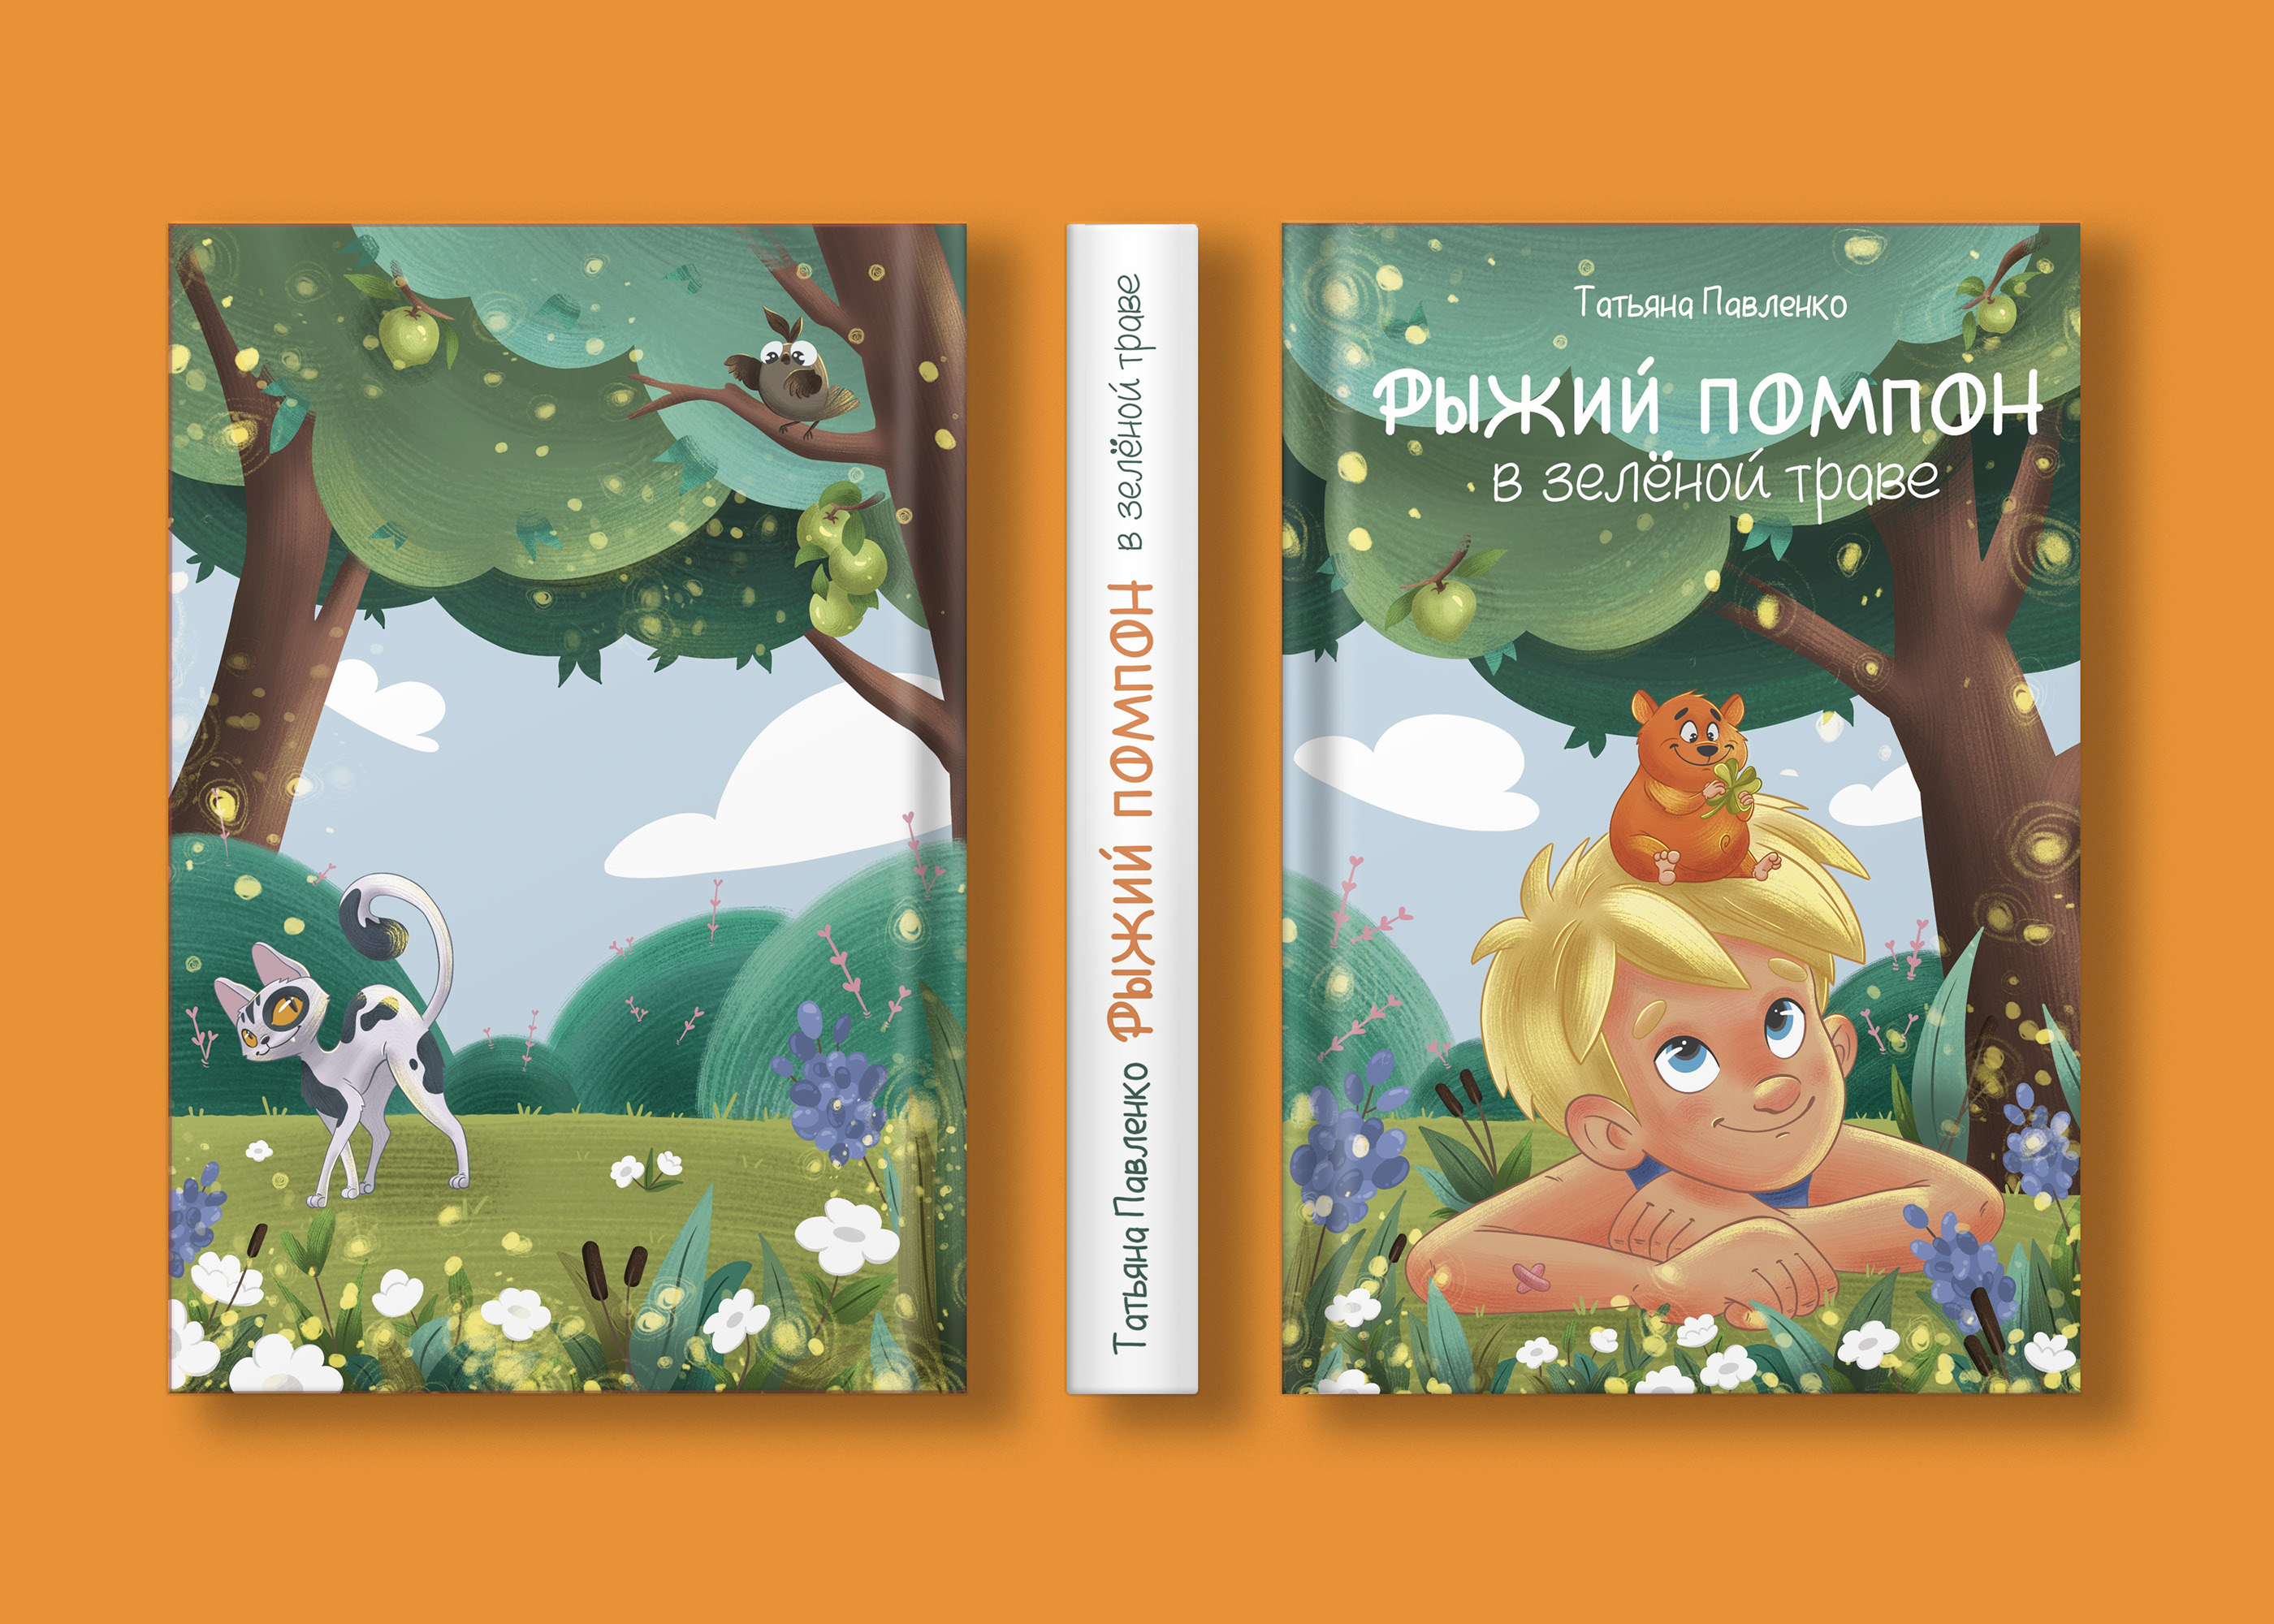 Cover for a children's book — Изображение №7 — Иллюстрация на Dprofile